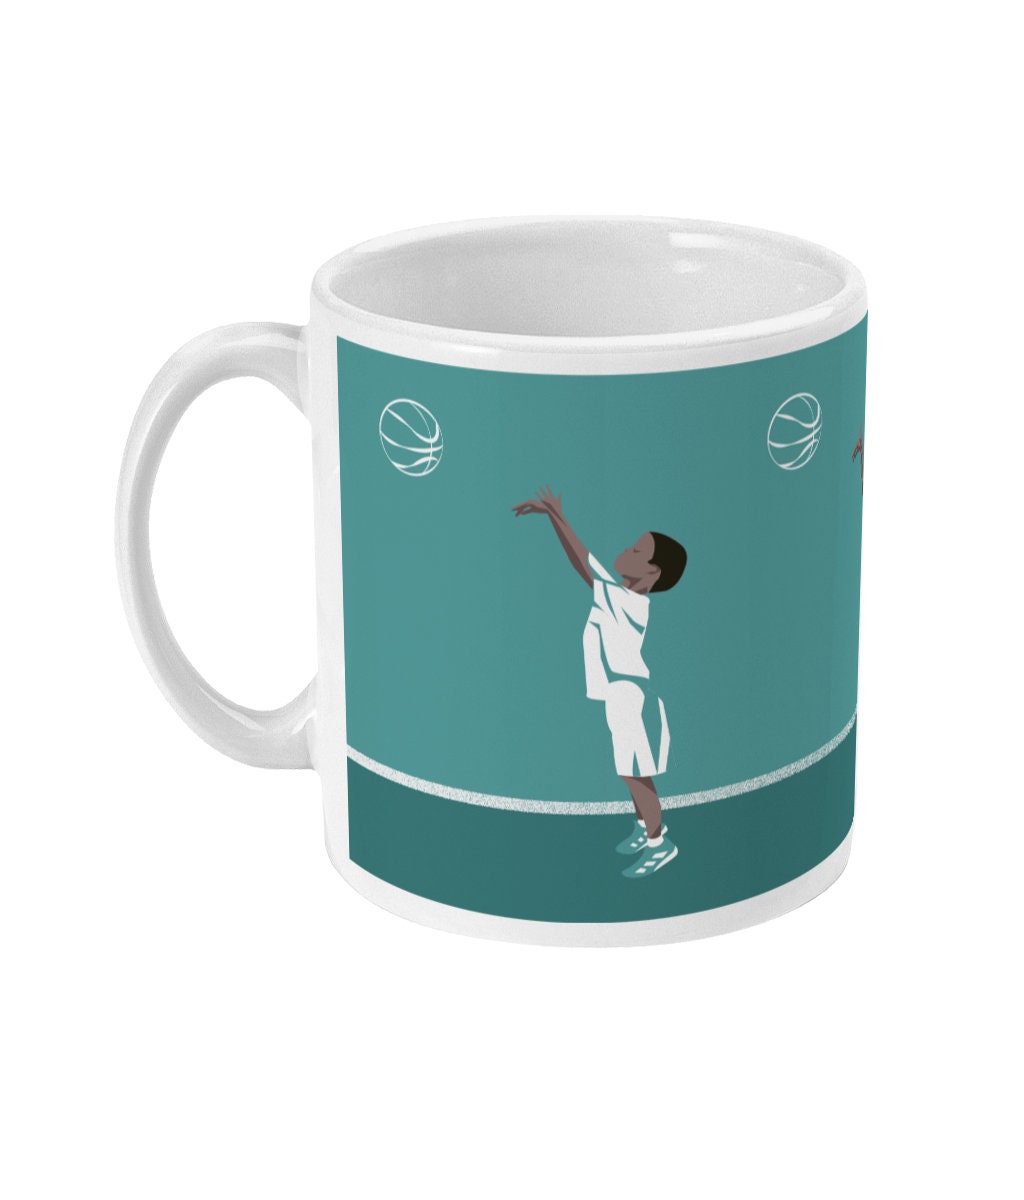 Basketball cup or mug "The boy who plays basketball" - Customizable